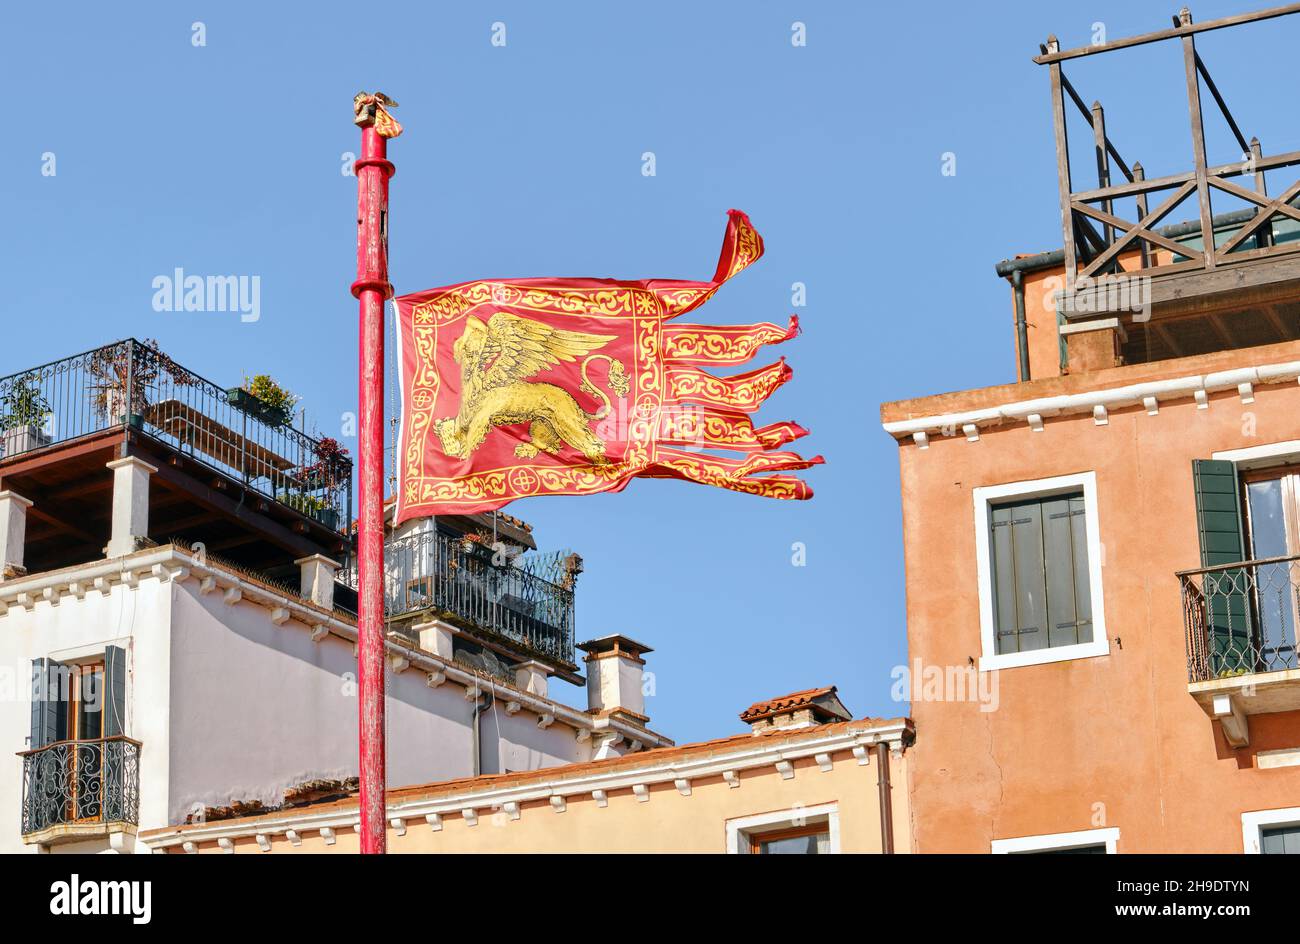 Bandera de Venecia en un fondo de la arquitectura tradicional italiana, el principal símbolo veneciano el león dorado alado de la marca evangelista Foto de stock